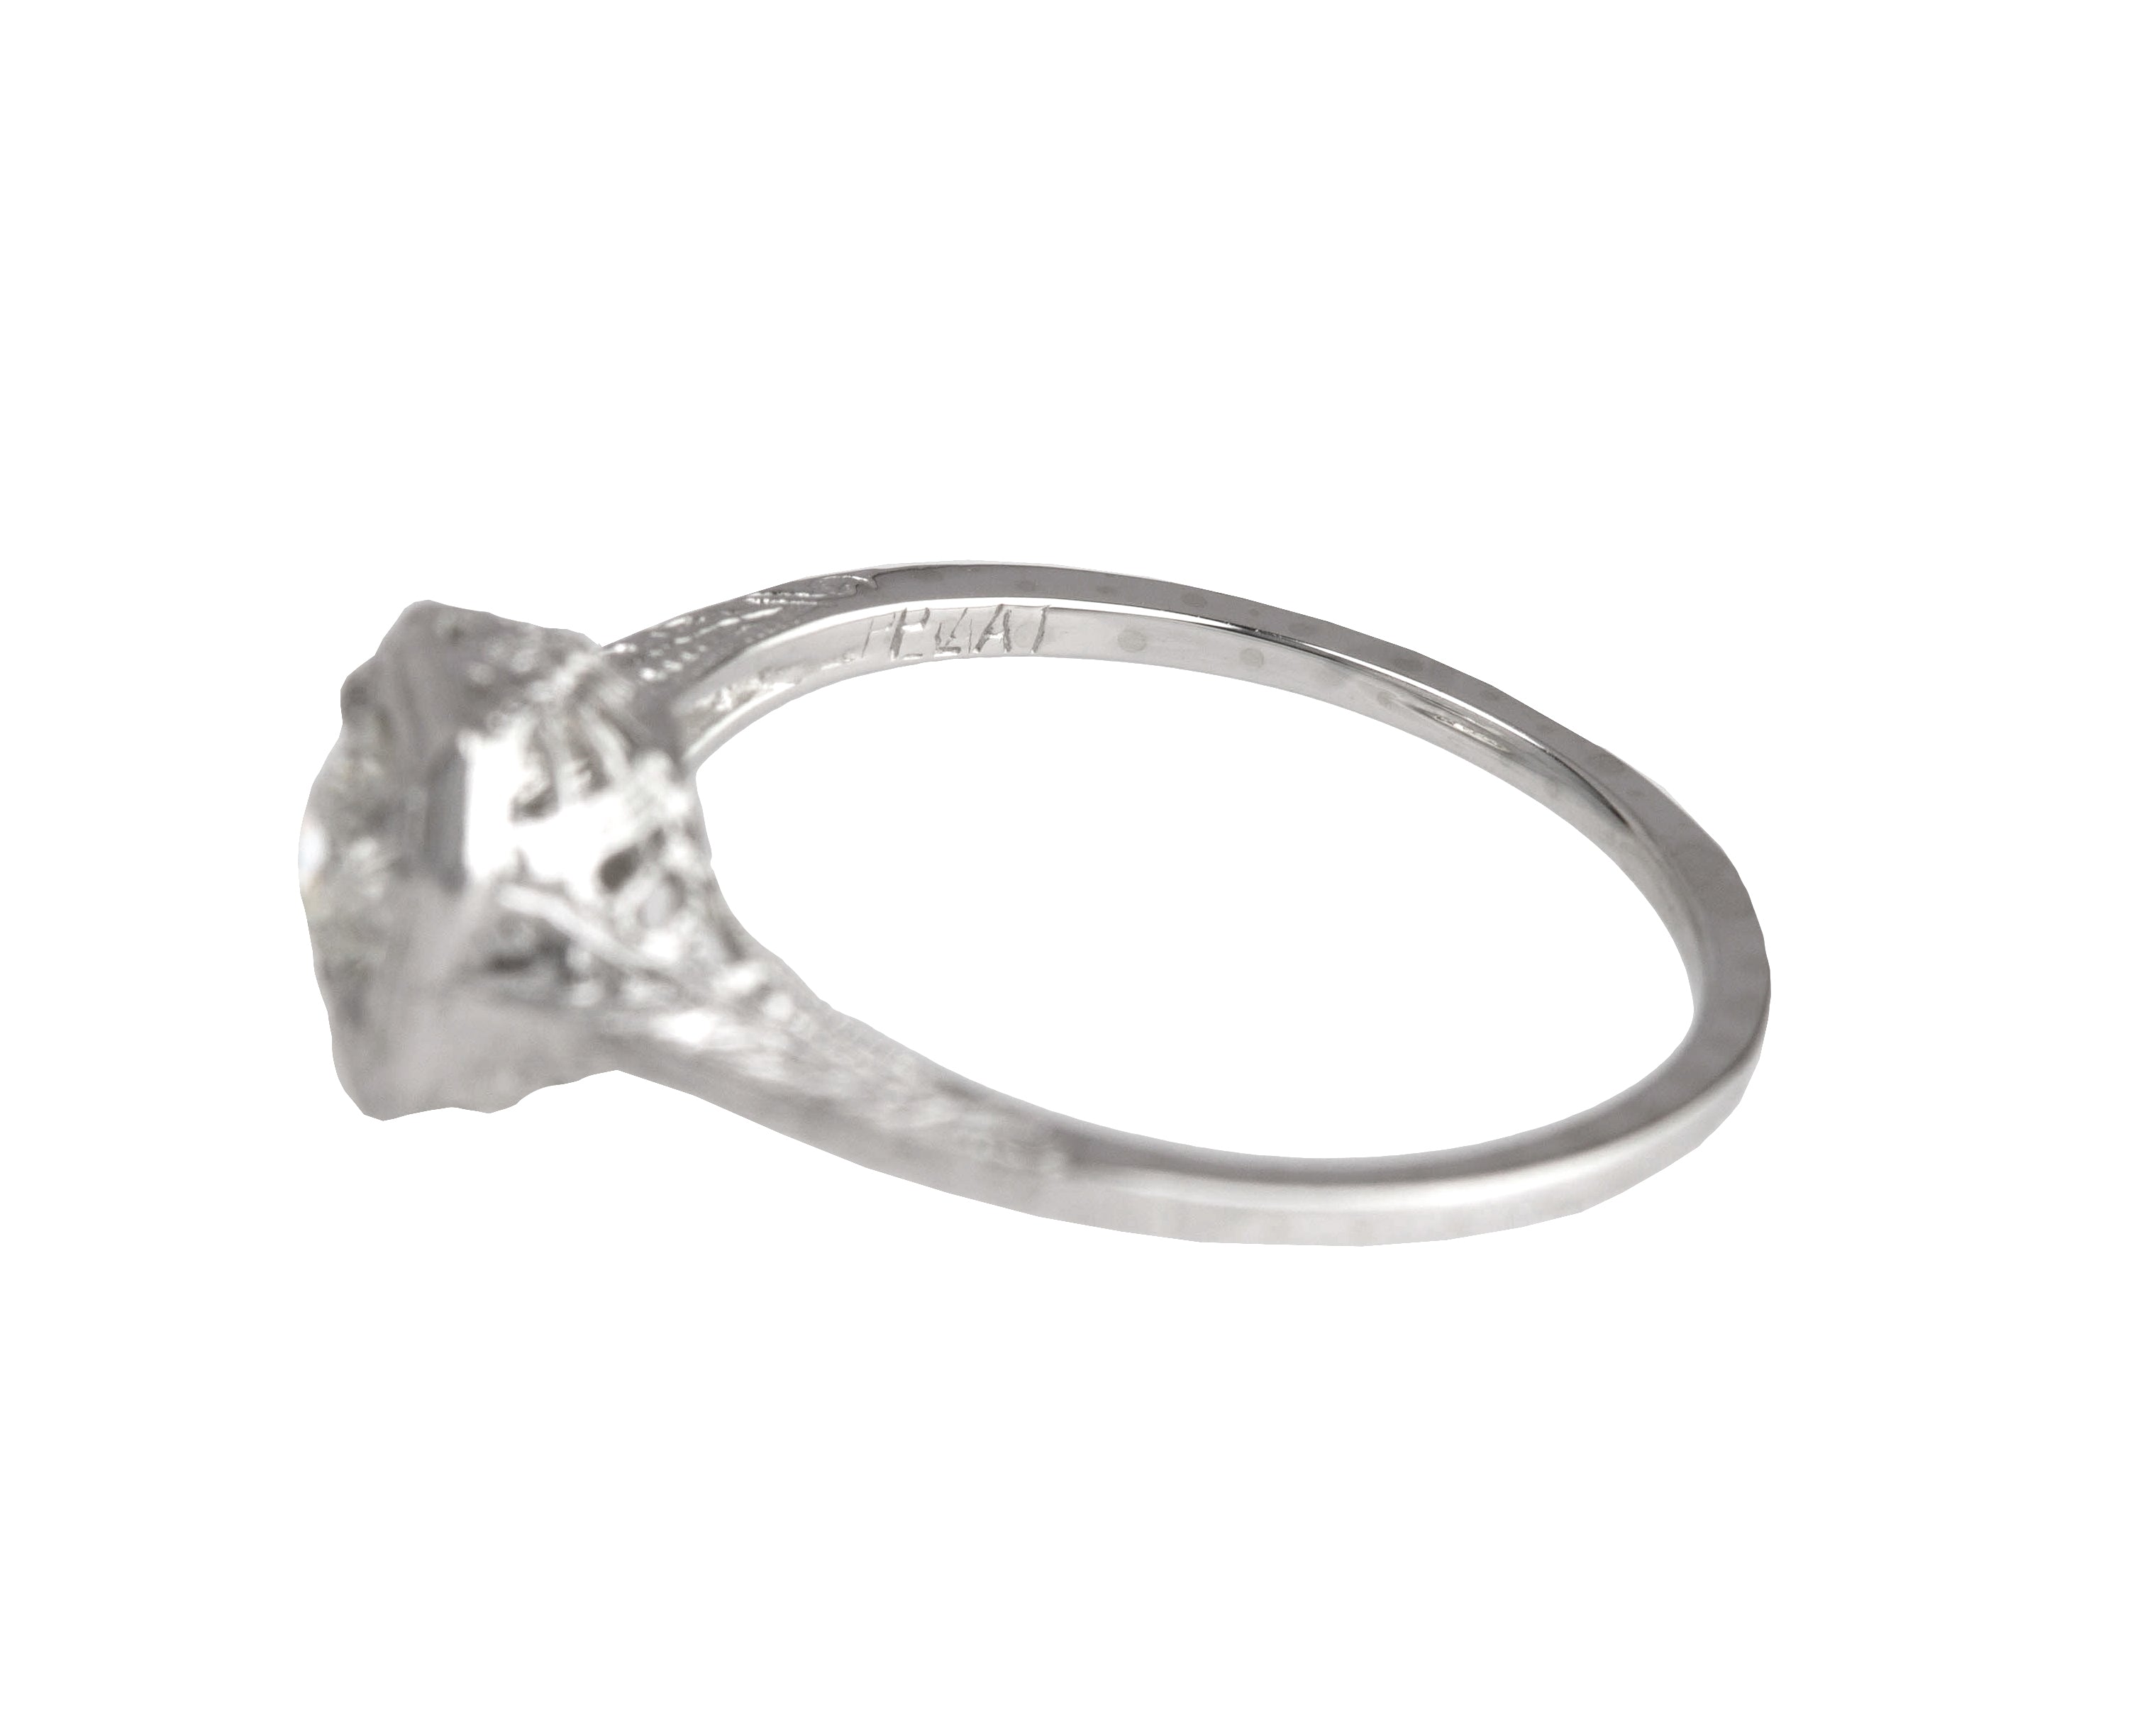 Antique Art Deco Platinum 0.37 CT Solitaire Diamond Filigree Engagement Ring